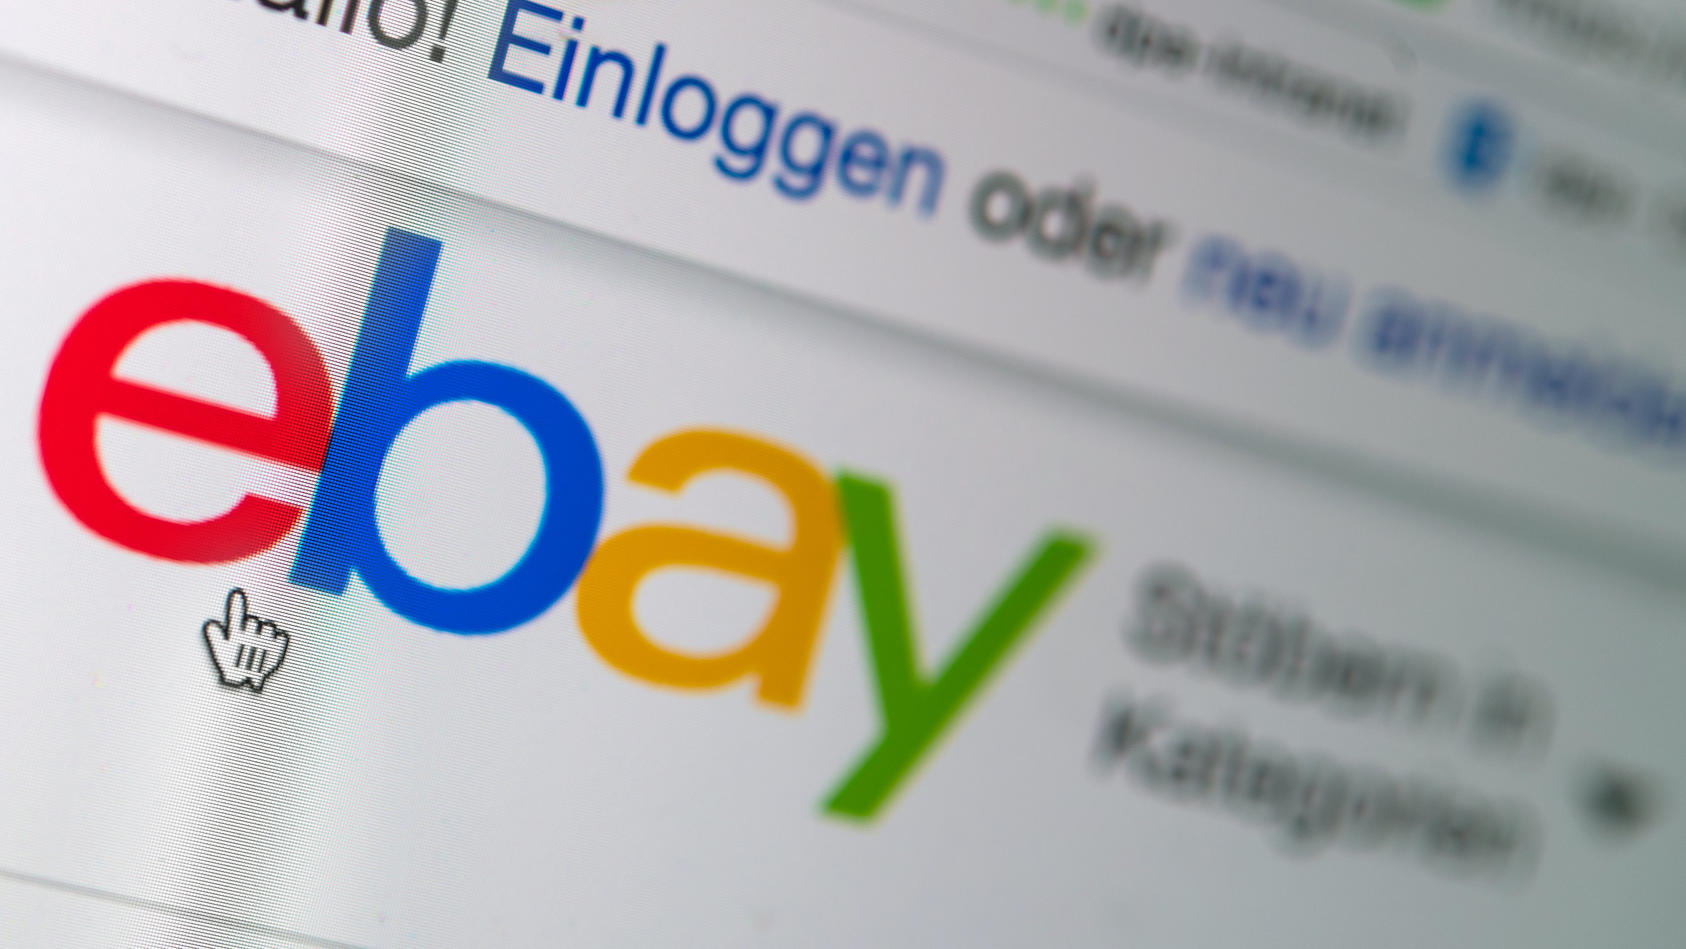 ebay-kleinanzeigen-ist-ein-beliebtes-online-kleinanzeigen-portal-dies-nutzen-betruger-aus-um-ahnungslose-kaufer-abzuzocken